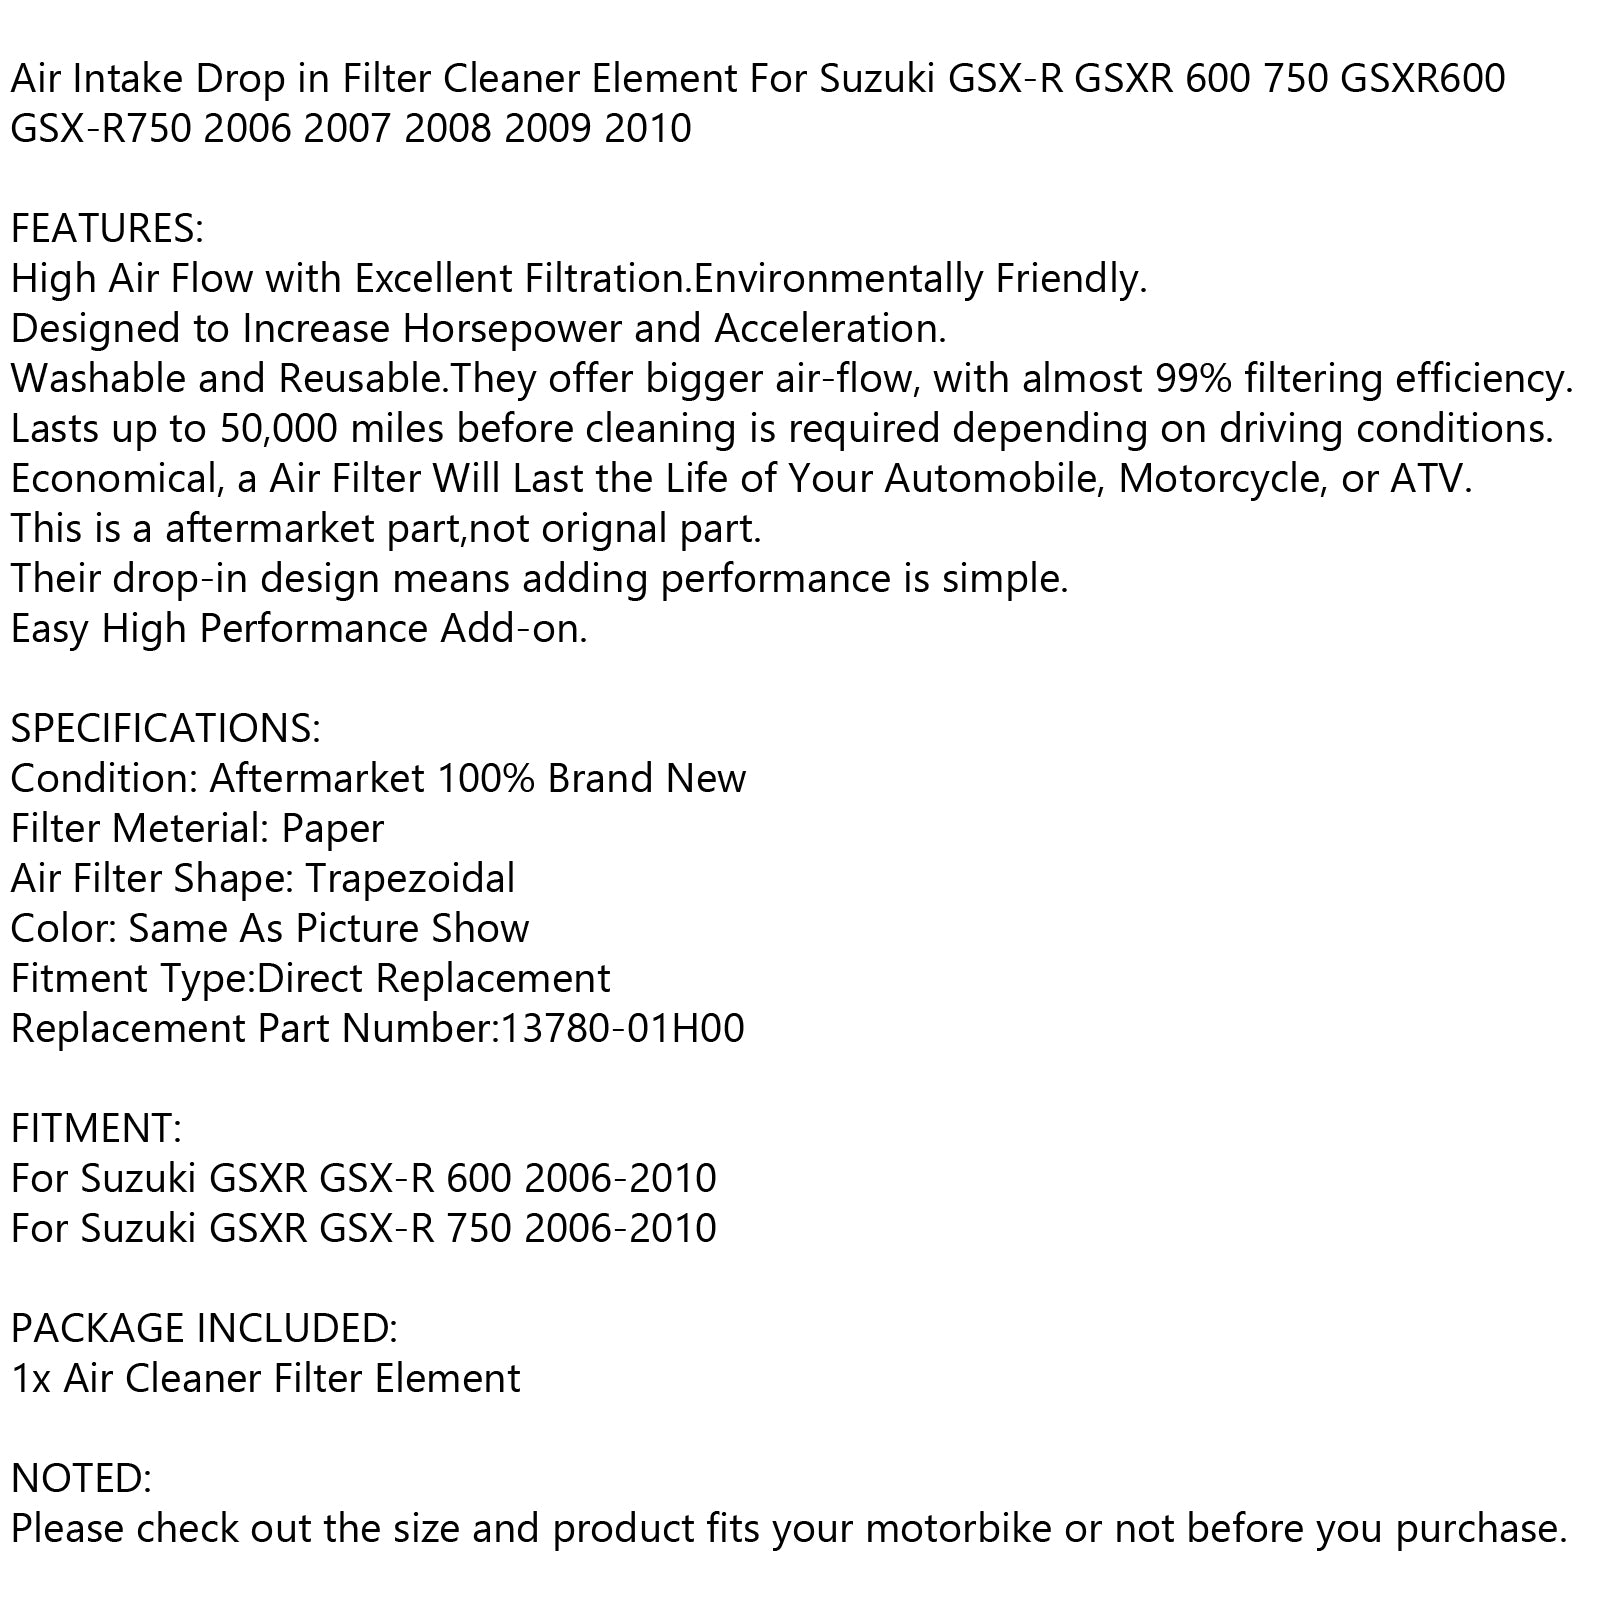 Air Filter Cleaner Fit For Suzuki GSX-R GSXR 600 750 2006-2010 K6-L0 13780-01H00